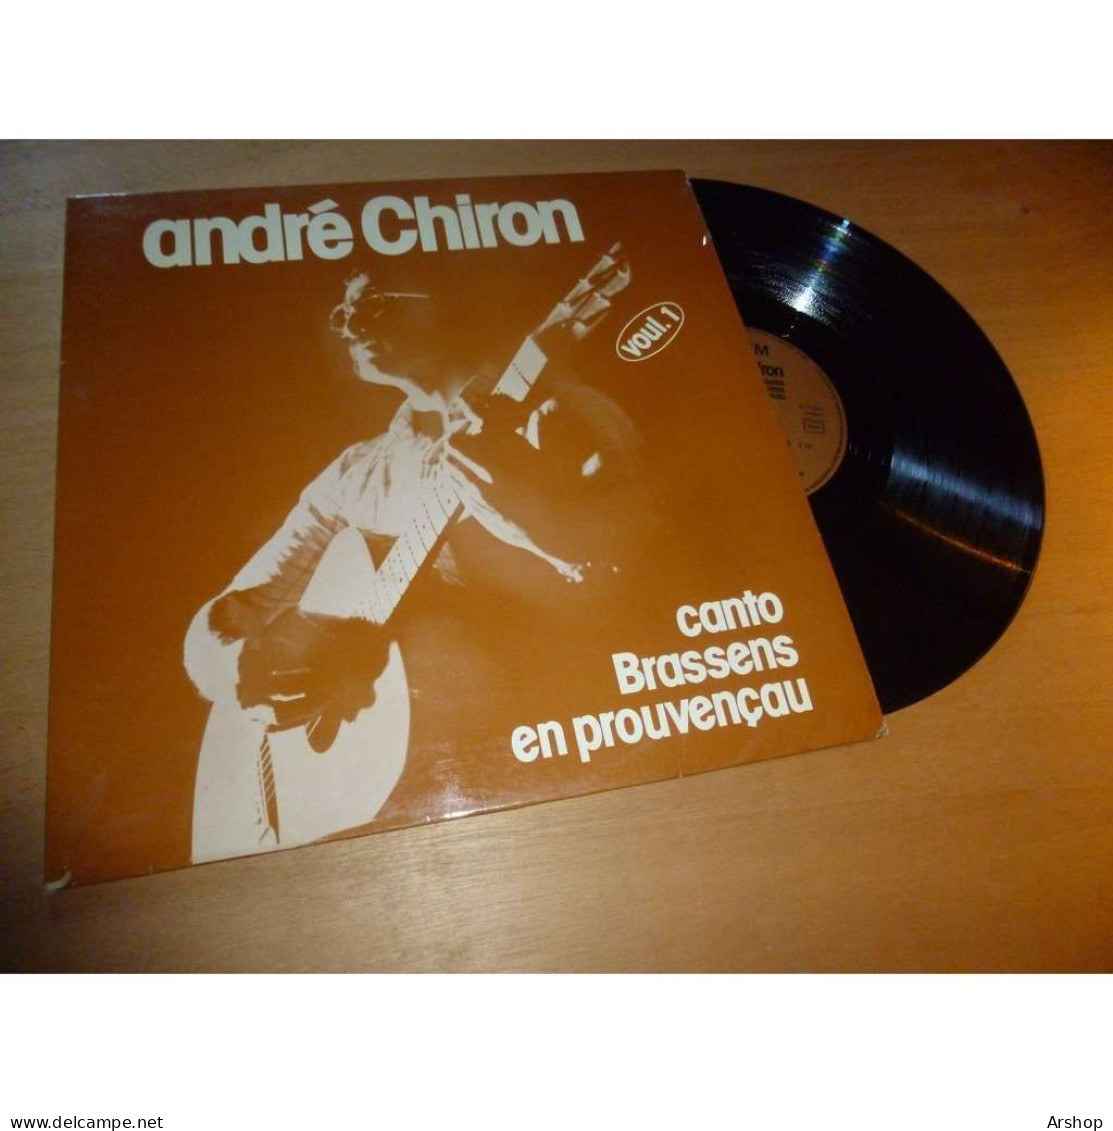 ANDRÉ CHIRON Canto GEORGES BRASSENS En Provencau - SAPEM SAP 204 Lp 1979 - Altri - Francese